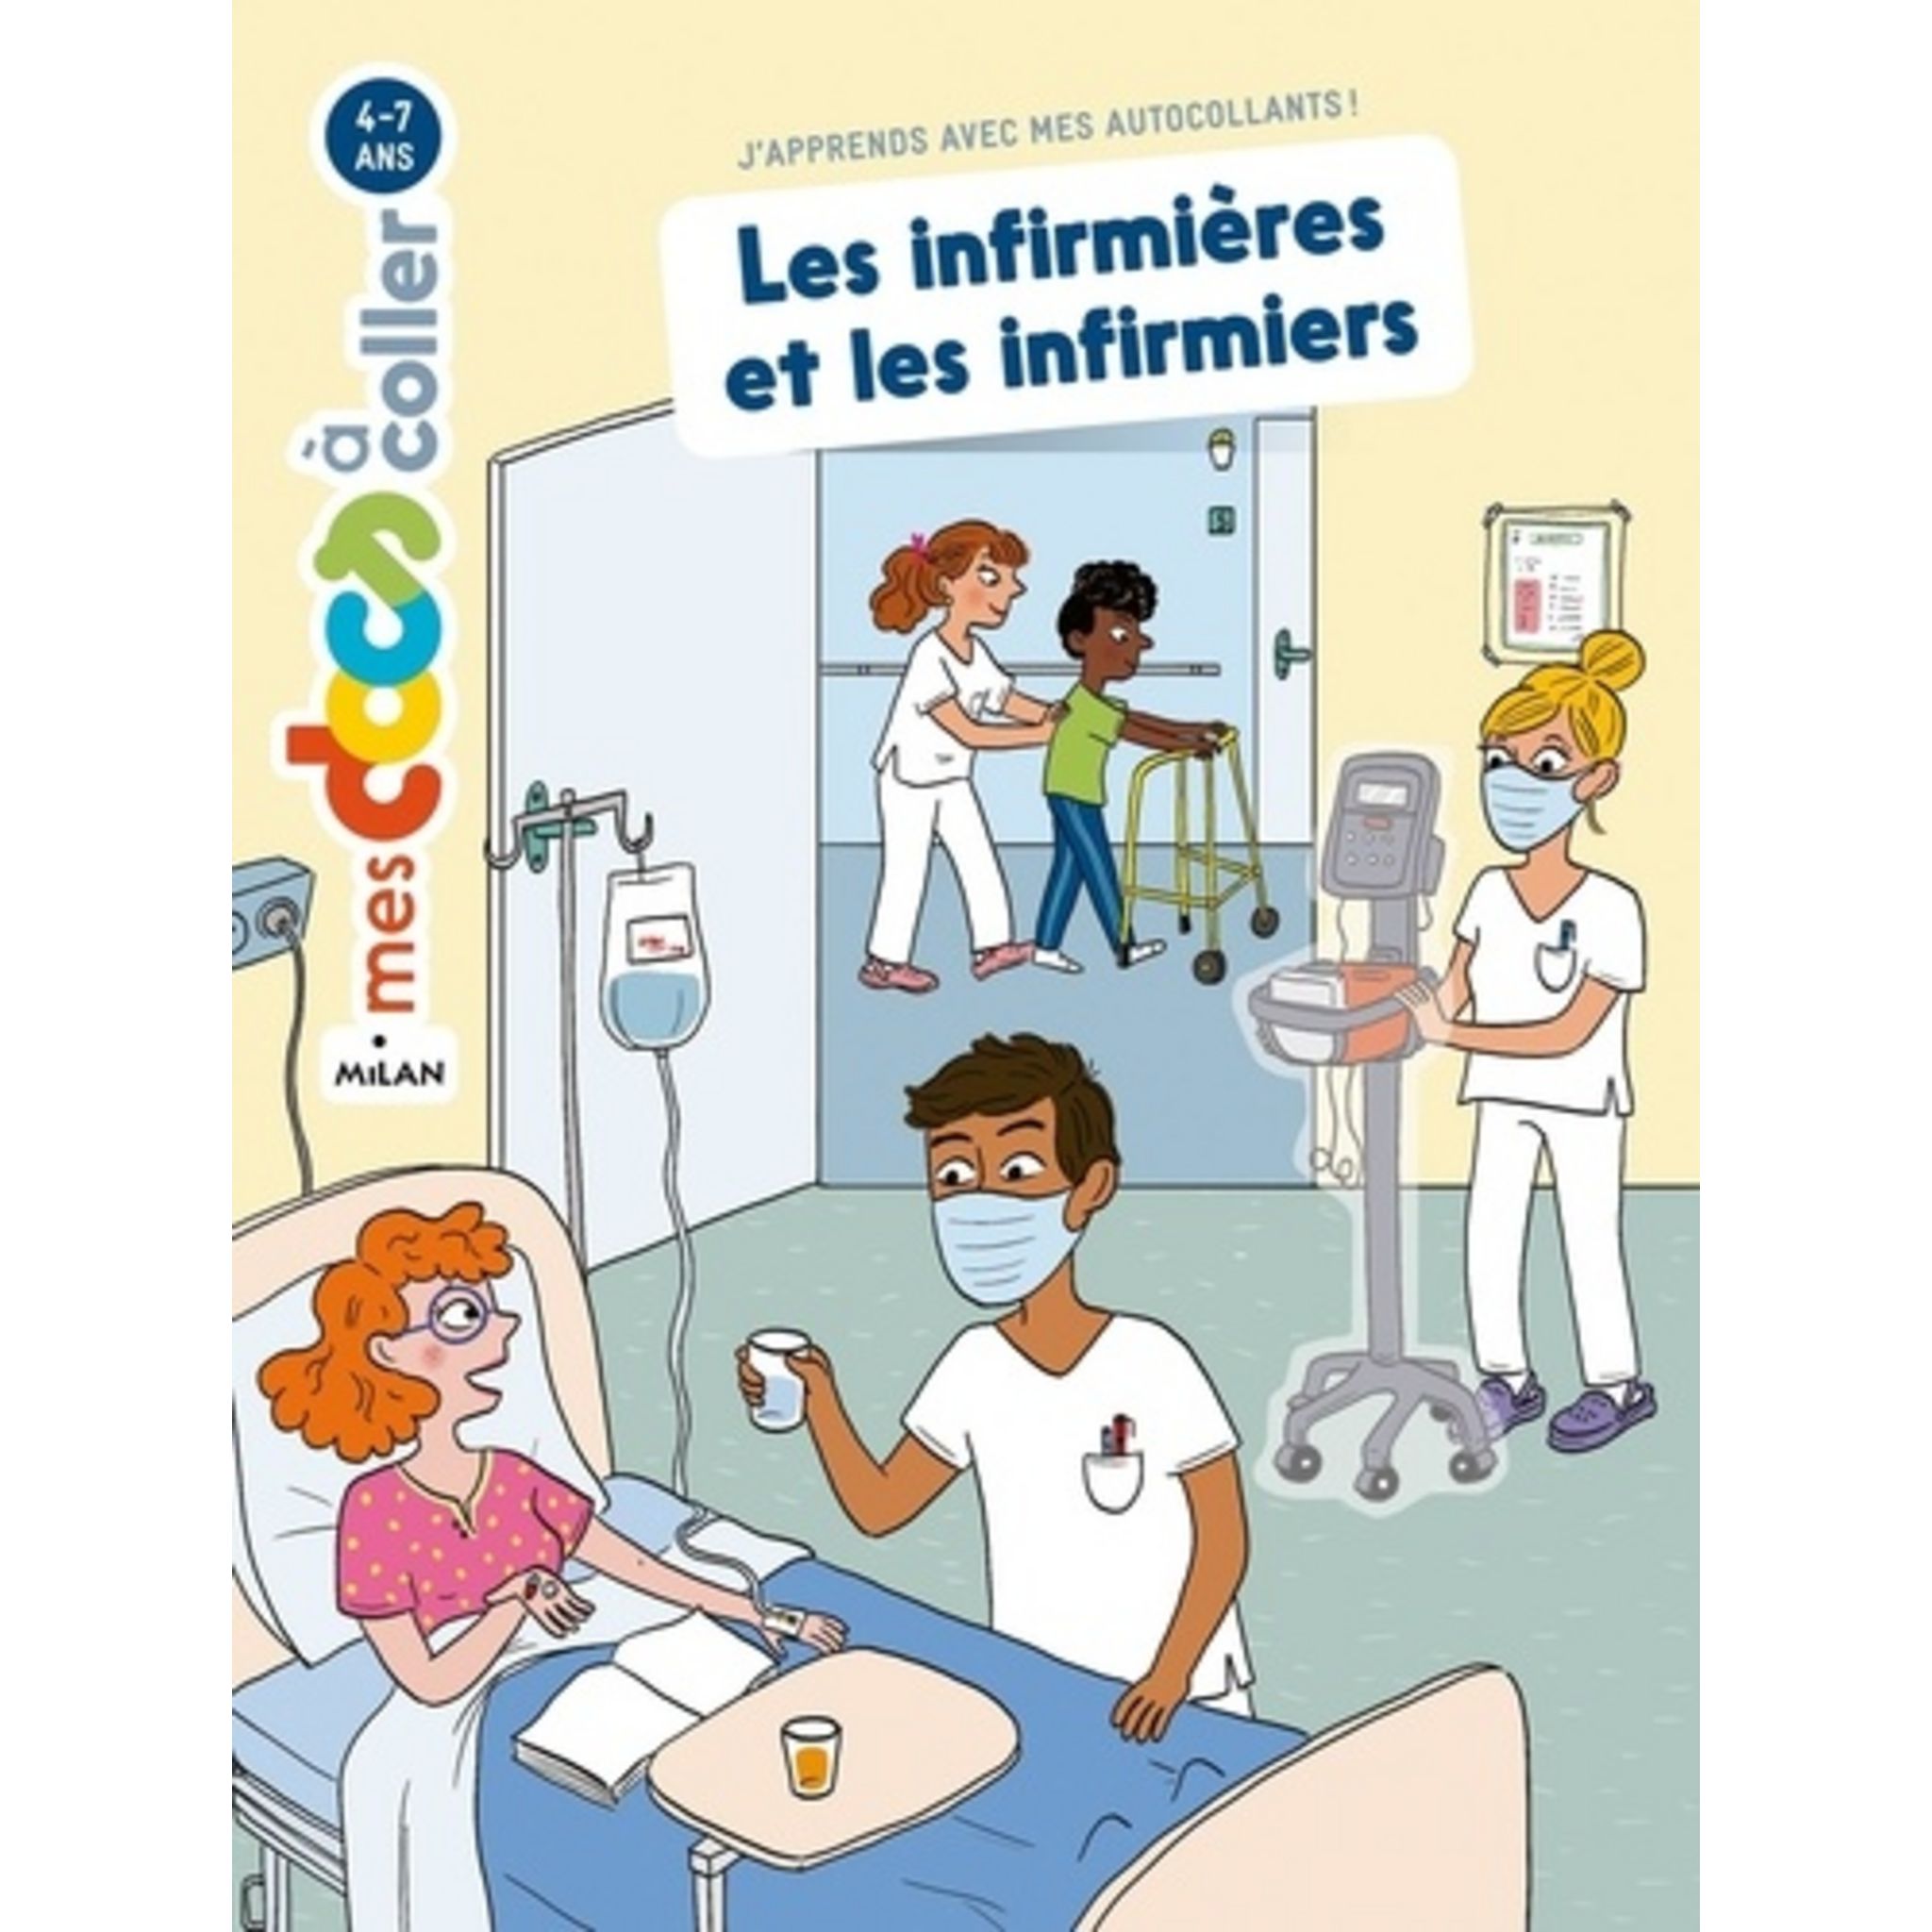 Carnet super infirmier - Carnet de notes infirmier - Journal d